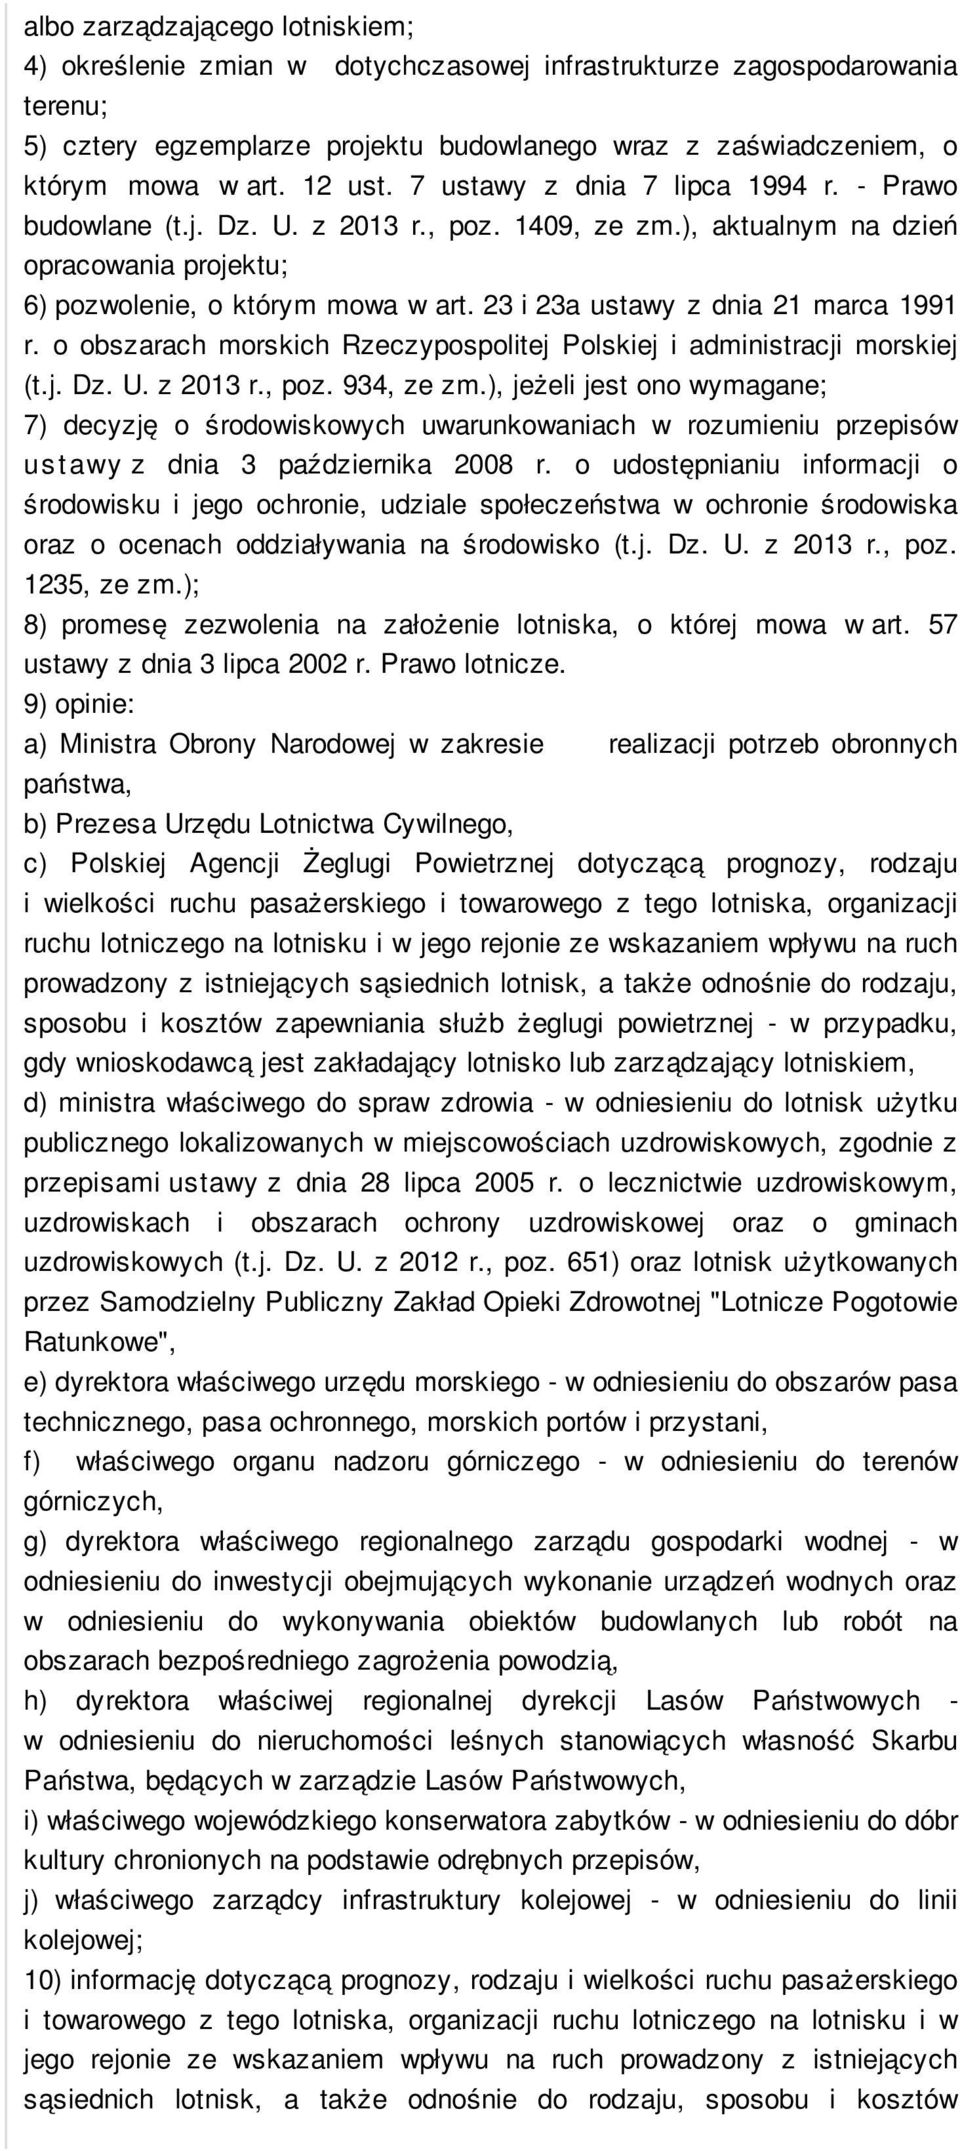 23 i 23a ustawy z dnia 21 marca 1991 r. o obszarach morskich Rzeczypospolitej Polskiej i administracji morskiej (t.j. Dz. U. z 2013 r., poz. 934, ze zm.